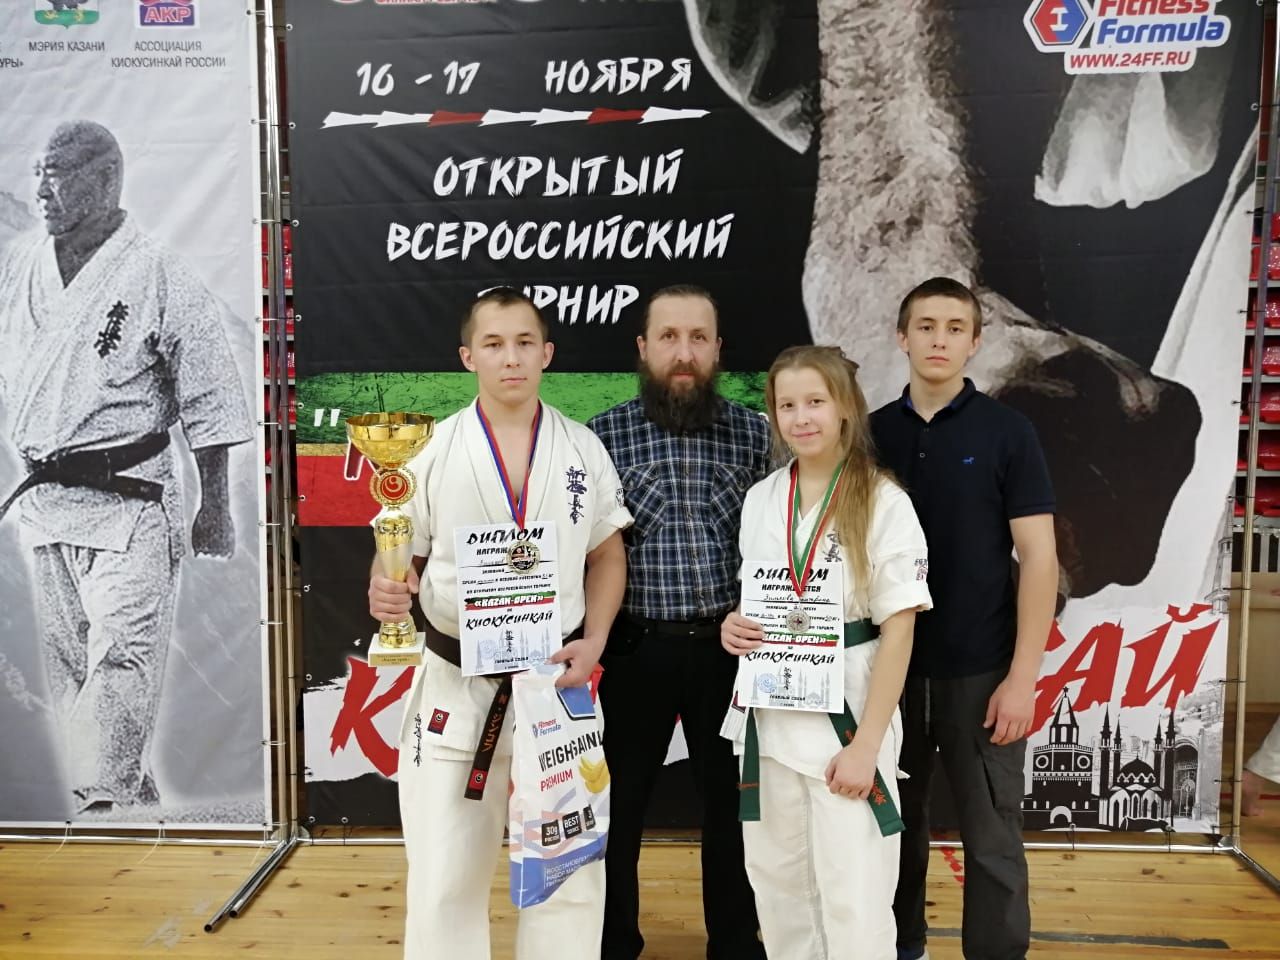 Әлки районы каратэчылары Бөтенроссия турнирыннан 10 медаль алып кайттылар